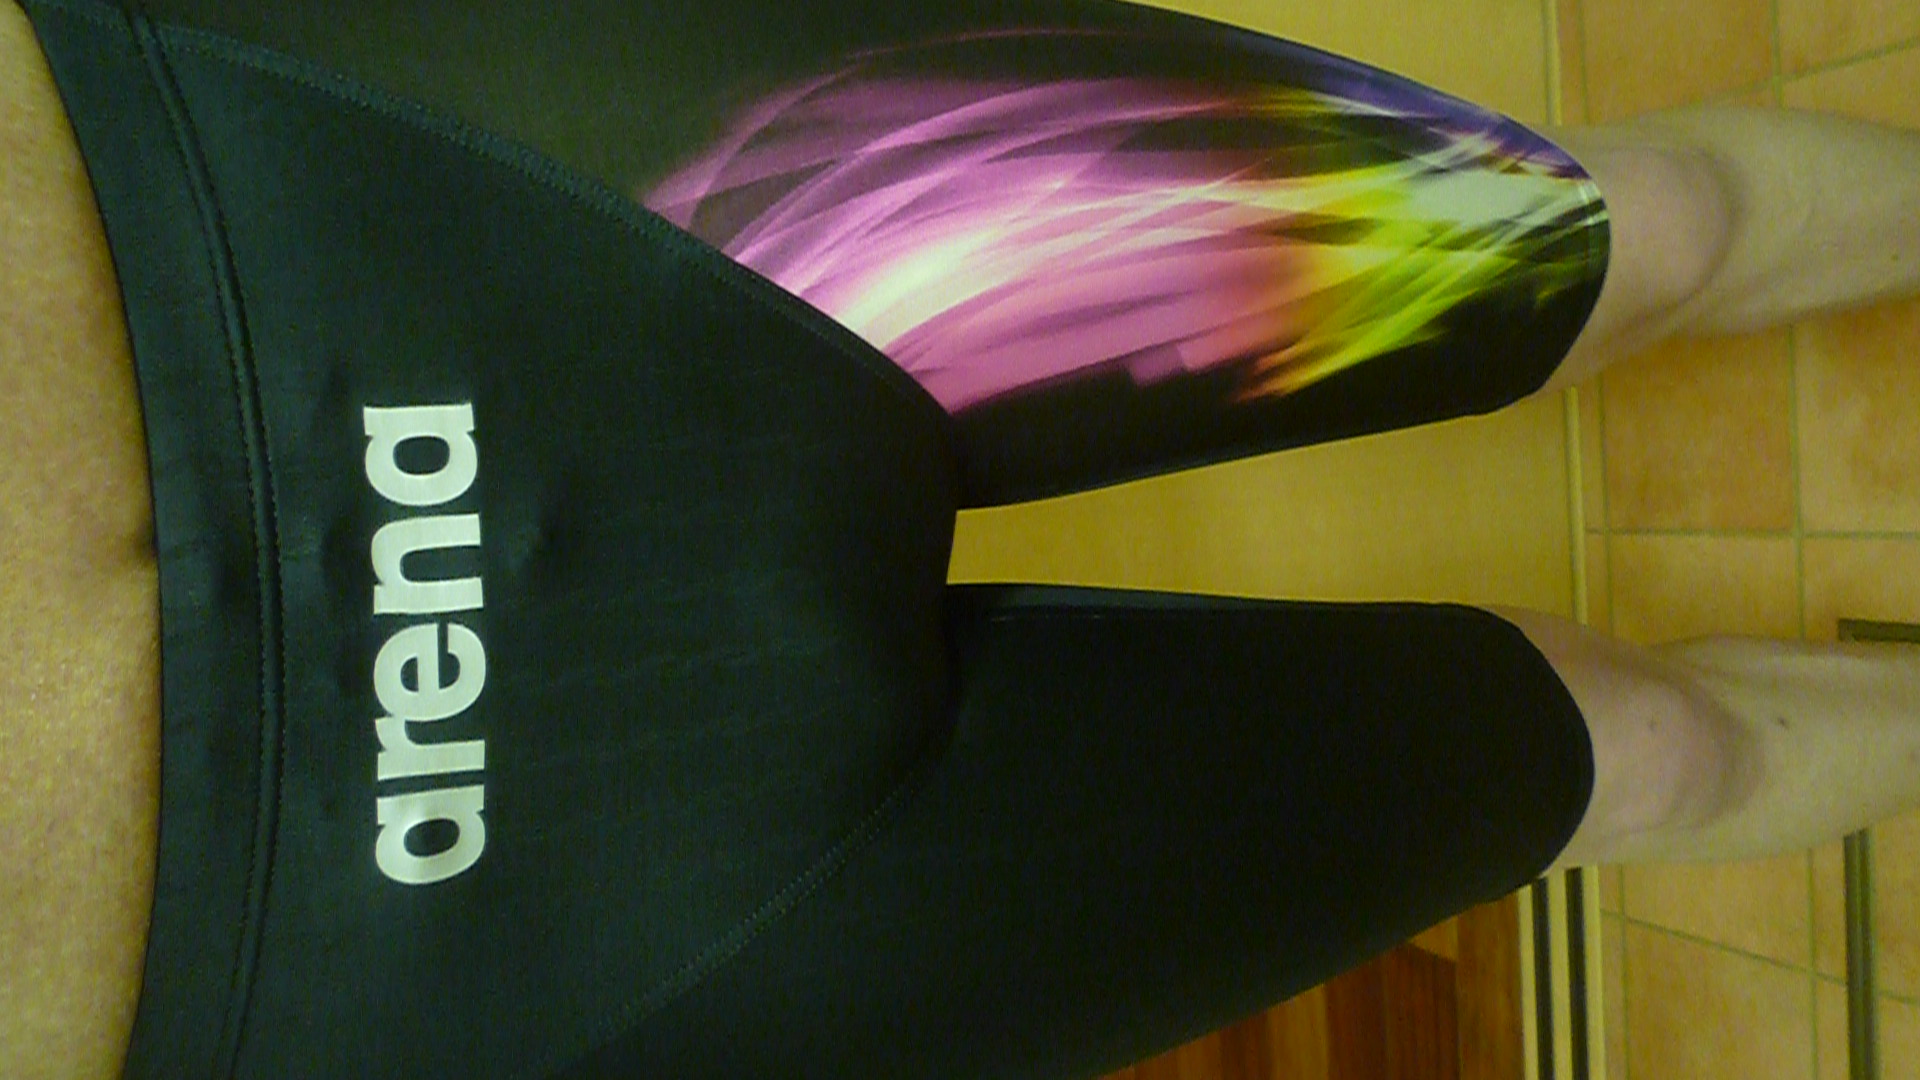 [男性] スパッツ型競泳水着画像掲示板へ投稿されたken様のスパッツ型競泳水着画像 No.16122714230001